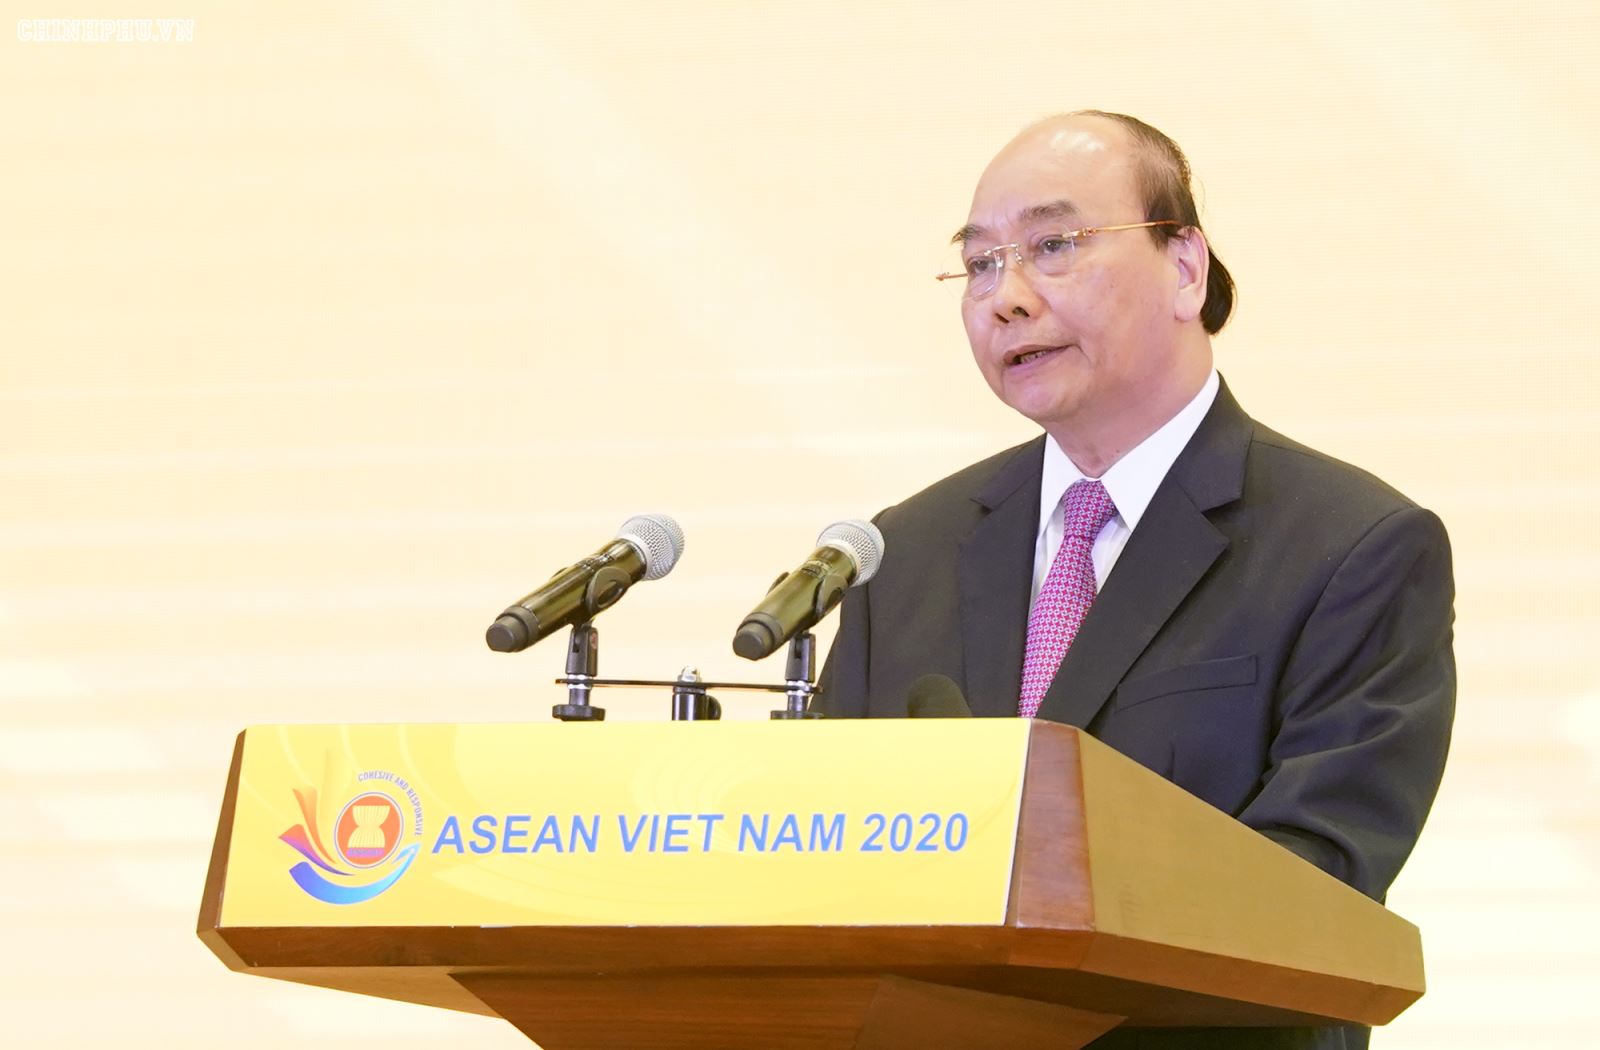 Lễ khởi động năm Chủ tịch ASEAN 2020